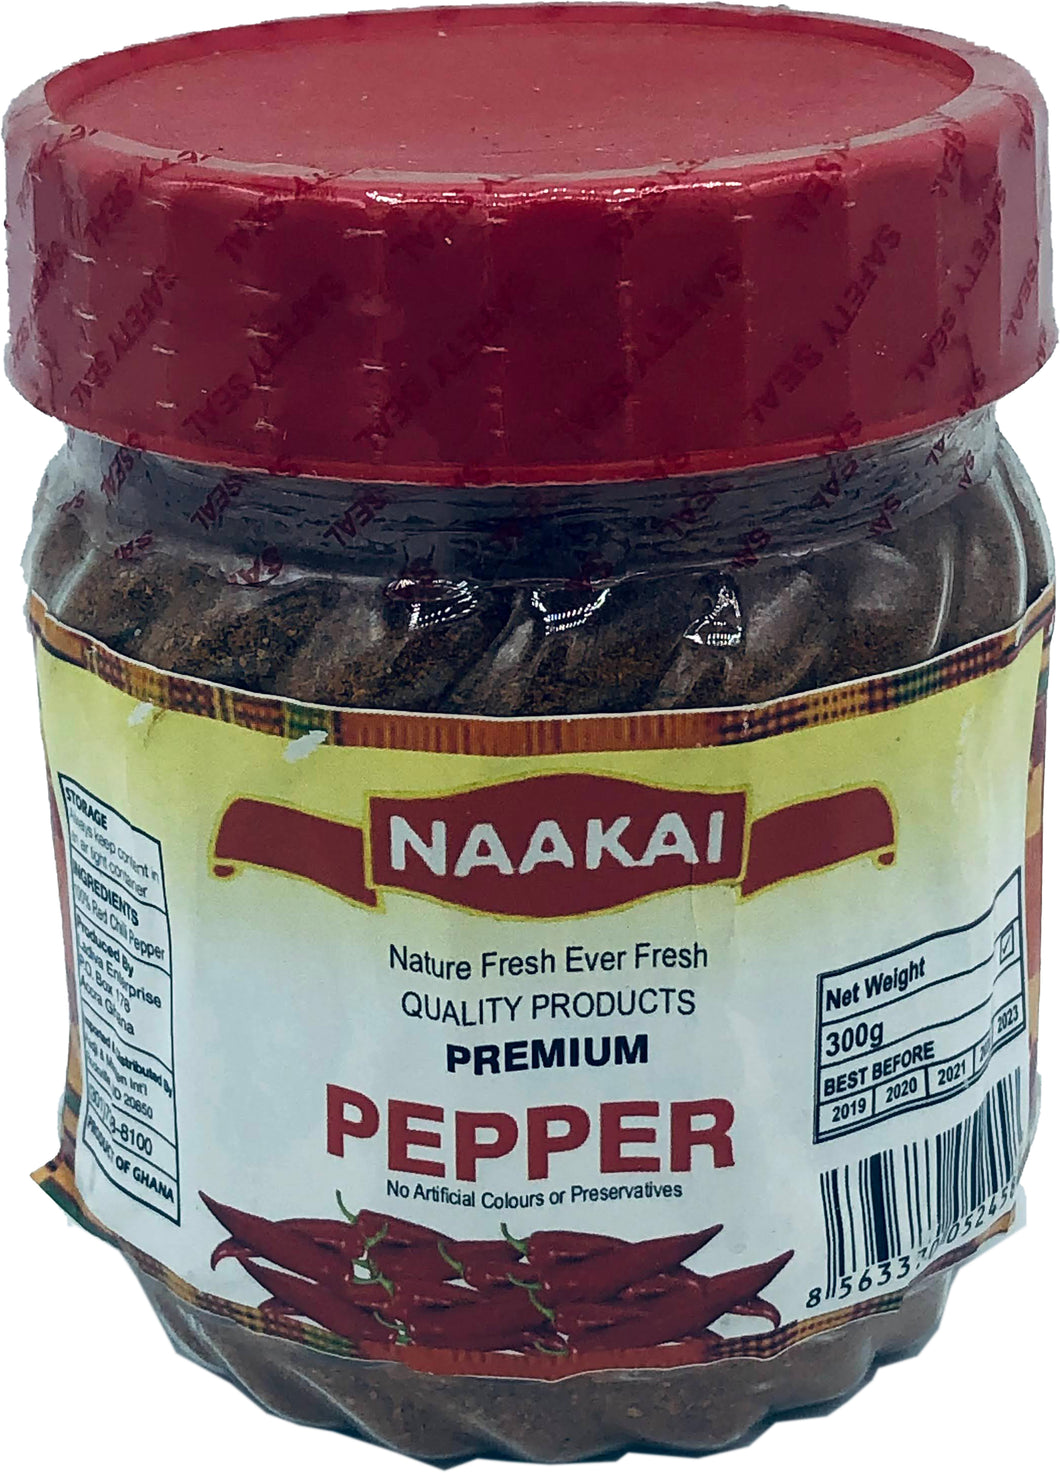 Naakai Pepper